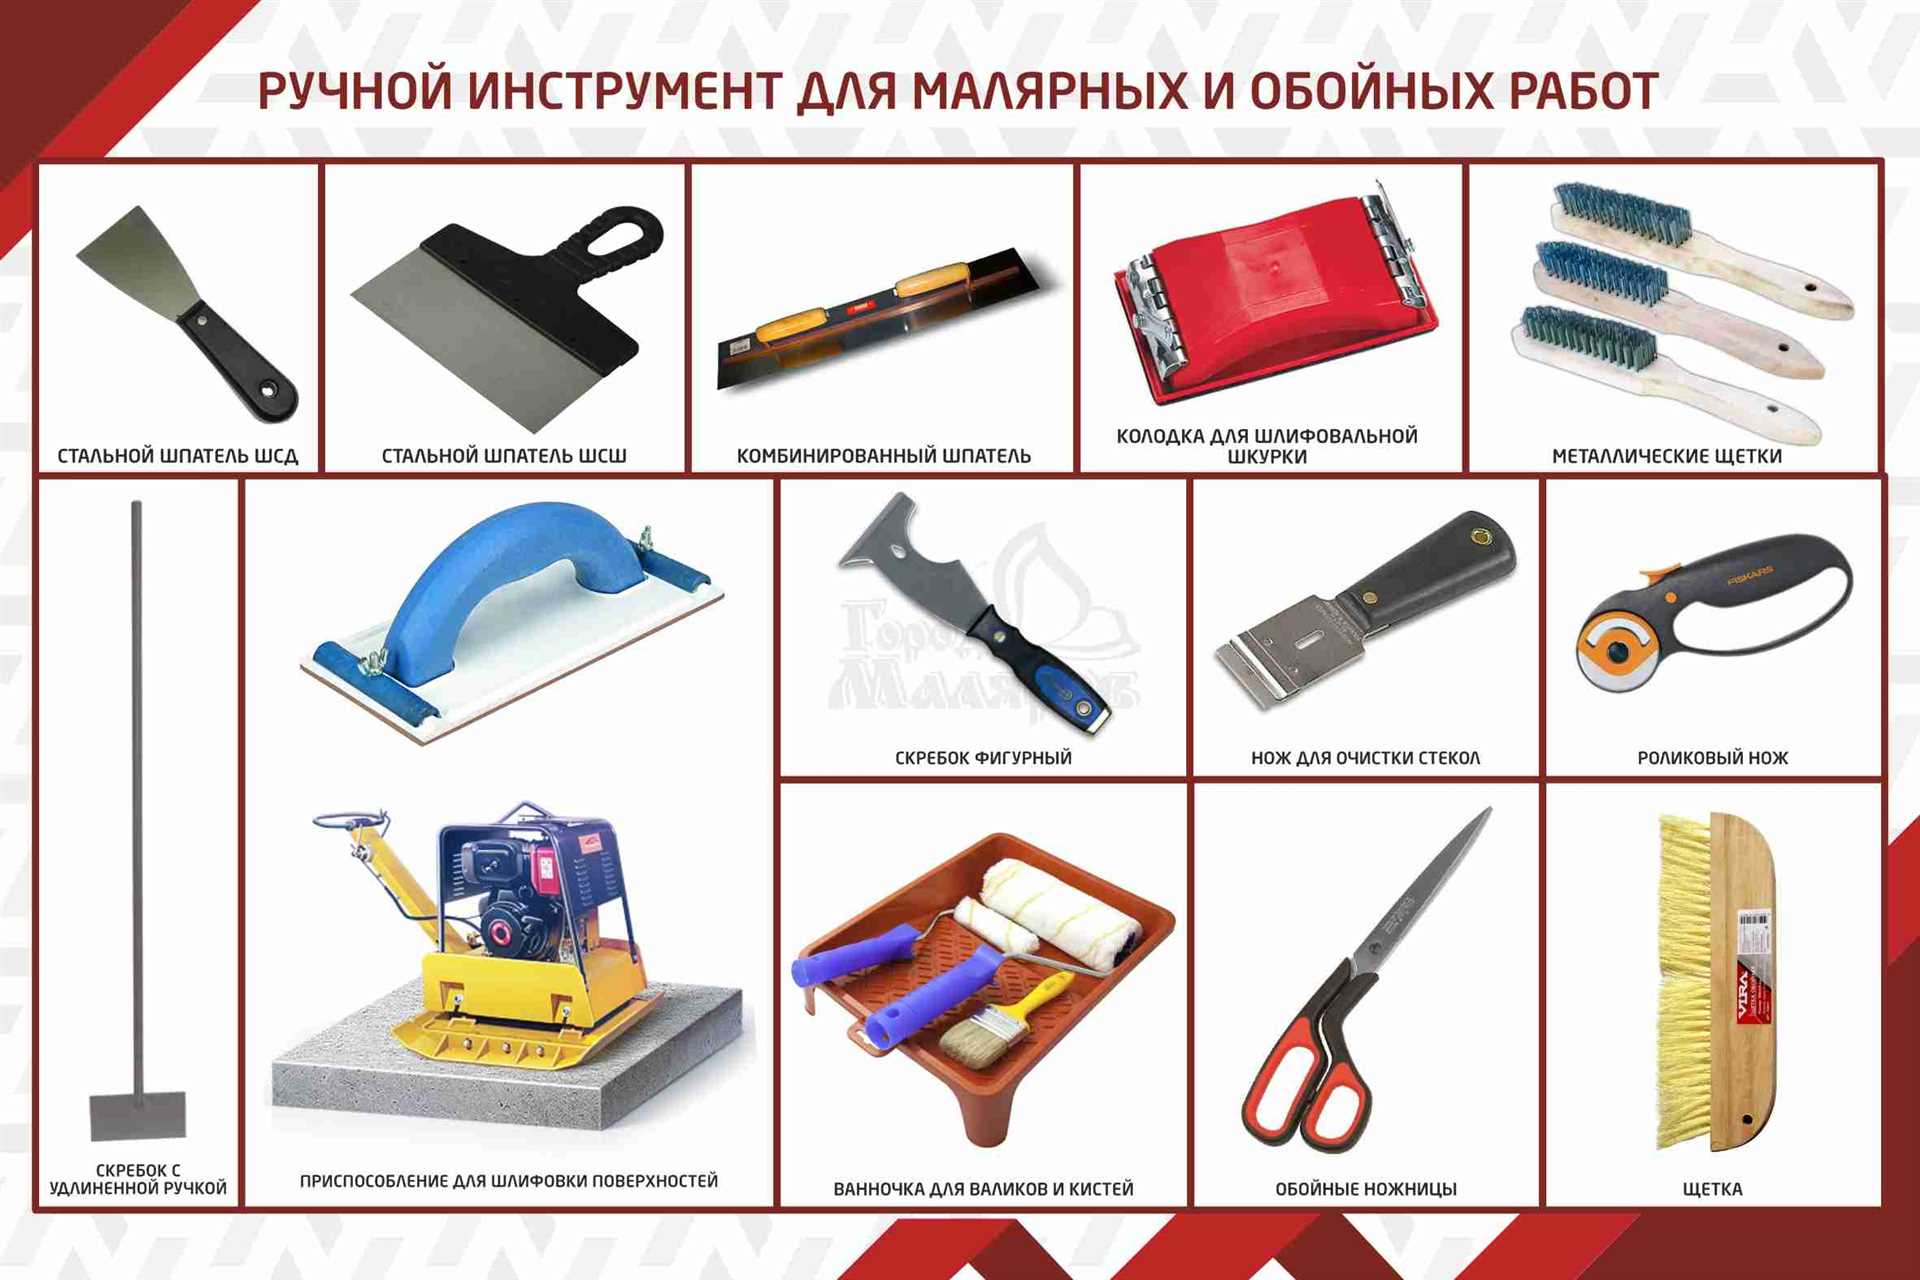 Необходимые инструменты для укладки линолеума: шпатель, линейка, ножи и другие